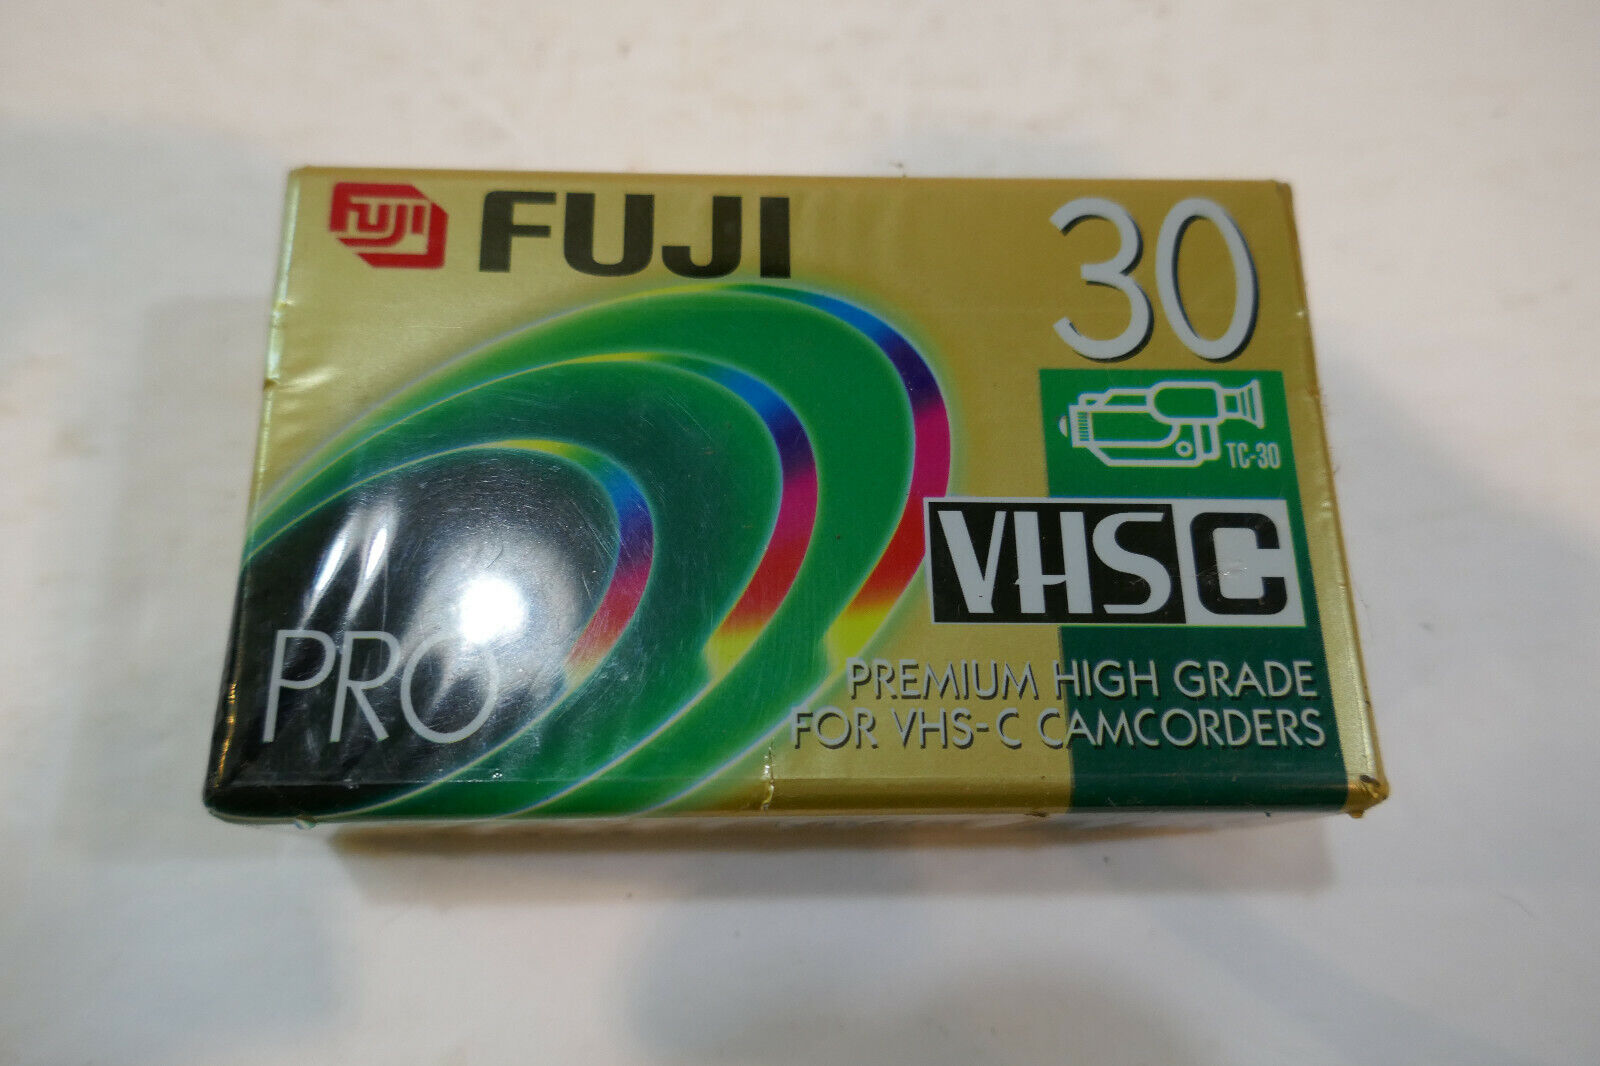 1 Fujifilm VHS C Tapes Pro Premium High Grade Camcorder TC 30 Vi